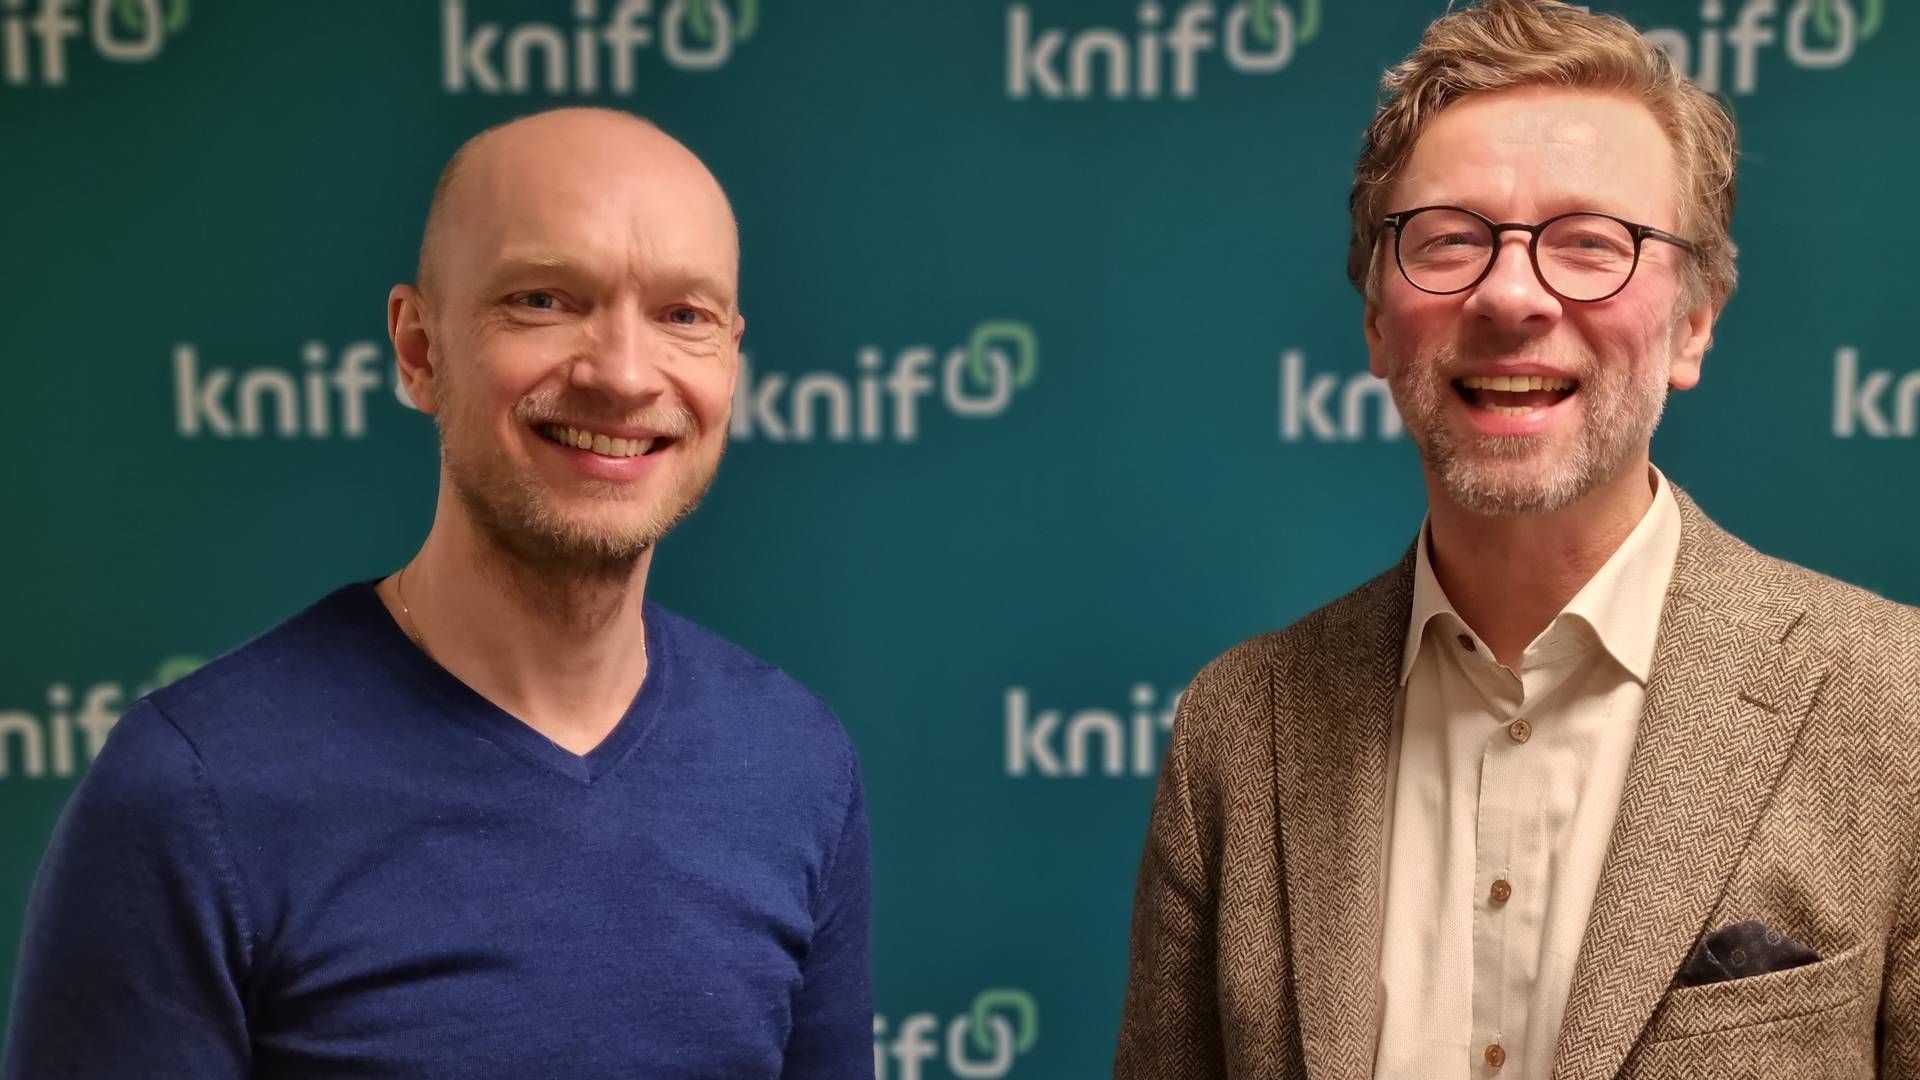 Konsernsjef Fridtjof Gillebo i Knif og TVL-redaktør Alf Gjøsund, som nå blir daglig leder i Knif Media AS. | Foto: Knif